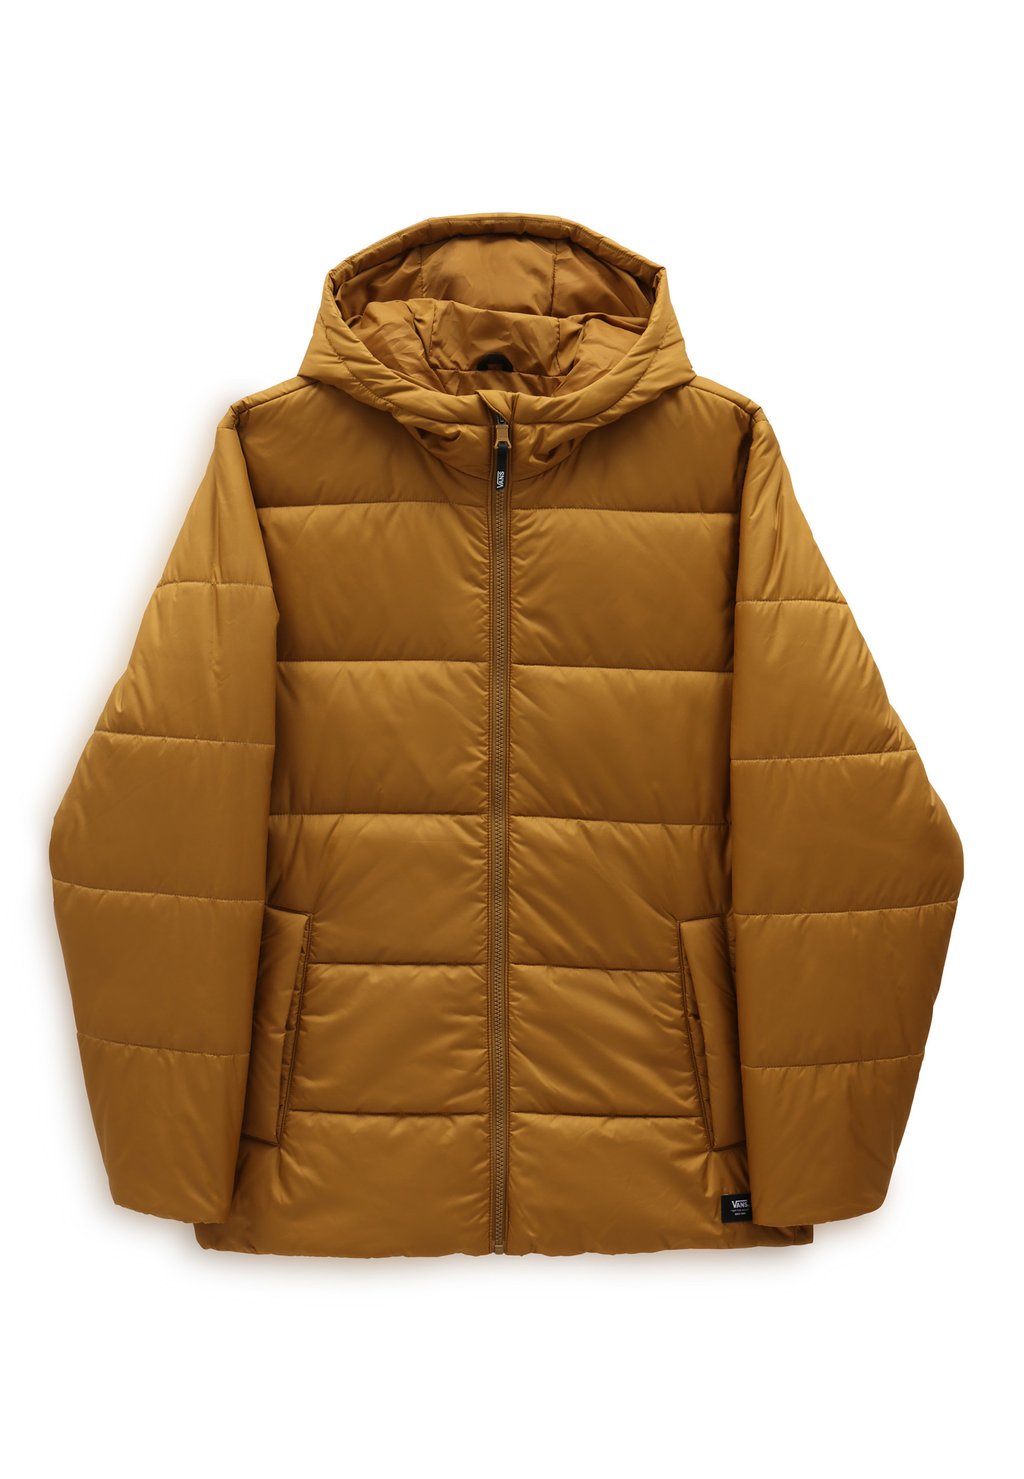 Зимняя куртка Norris Mte Puffer Vans, цвет golden brown куртка vans prospect mte 1 puffer jacket цвет oatmeal dress blues